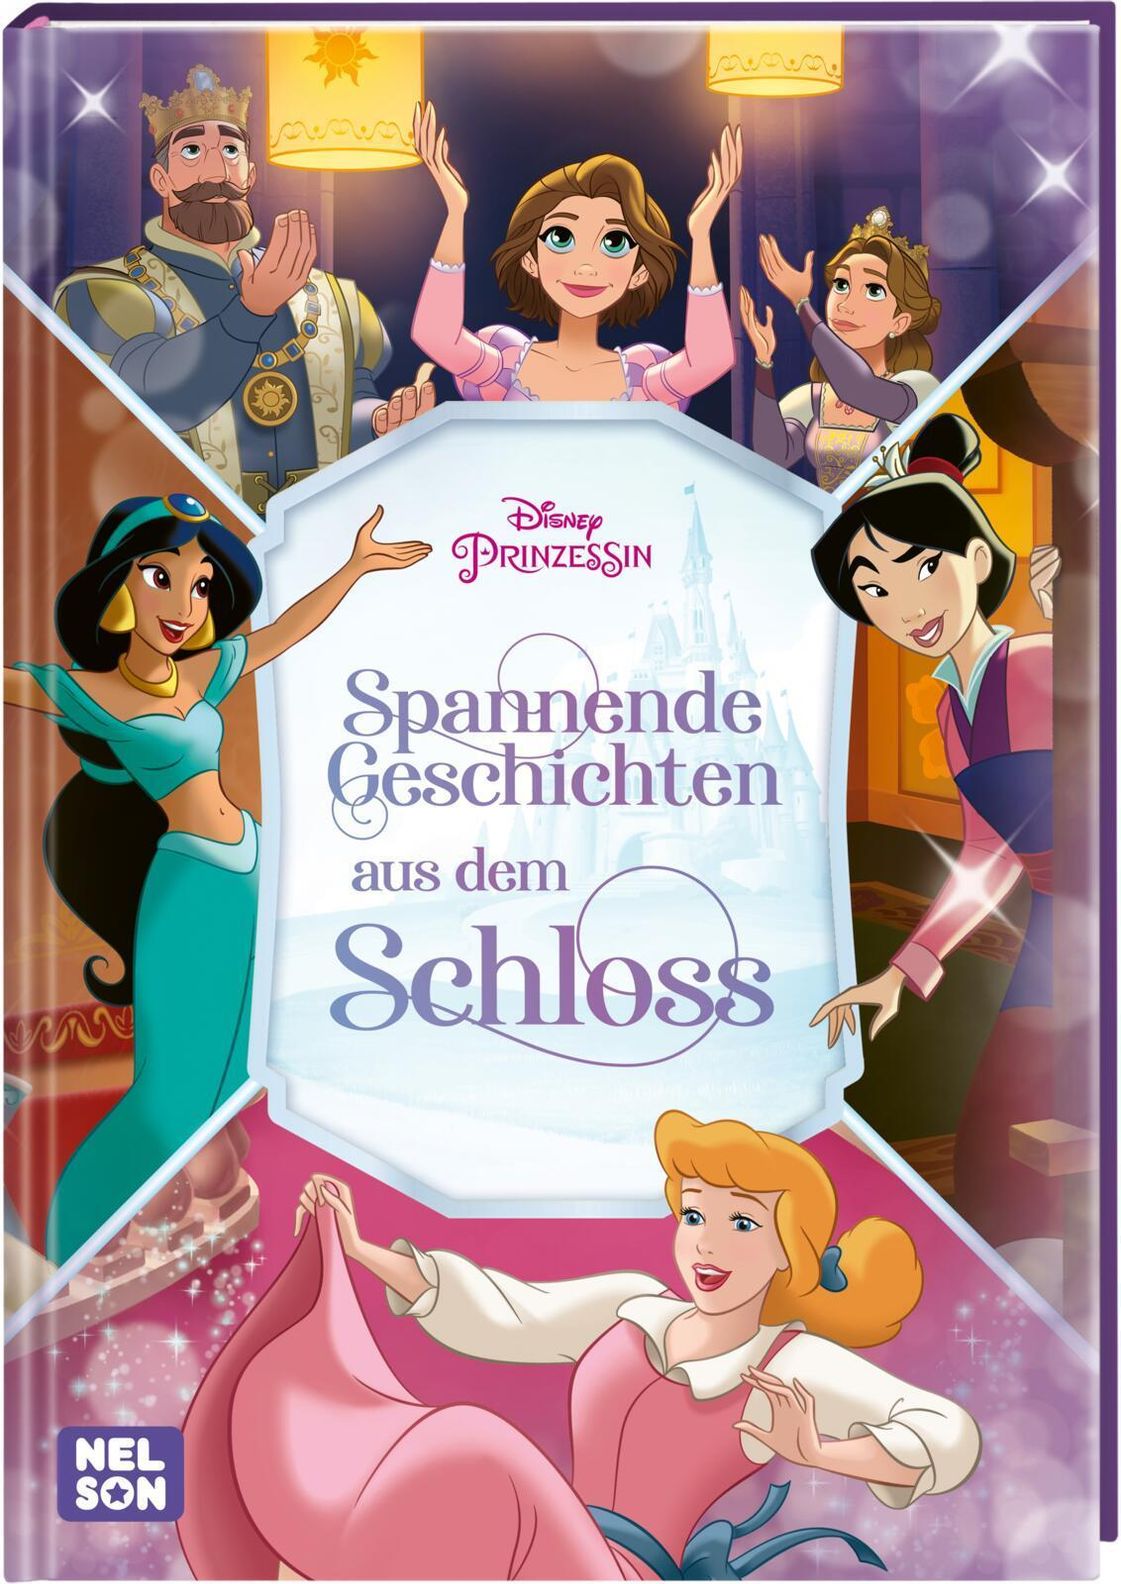 Disney Prinzessin: Spannende Geschichten aus dem Schloss kaufen